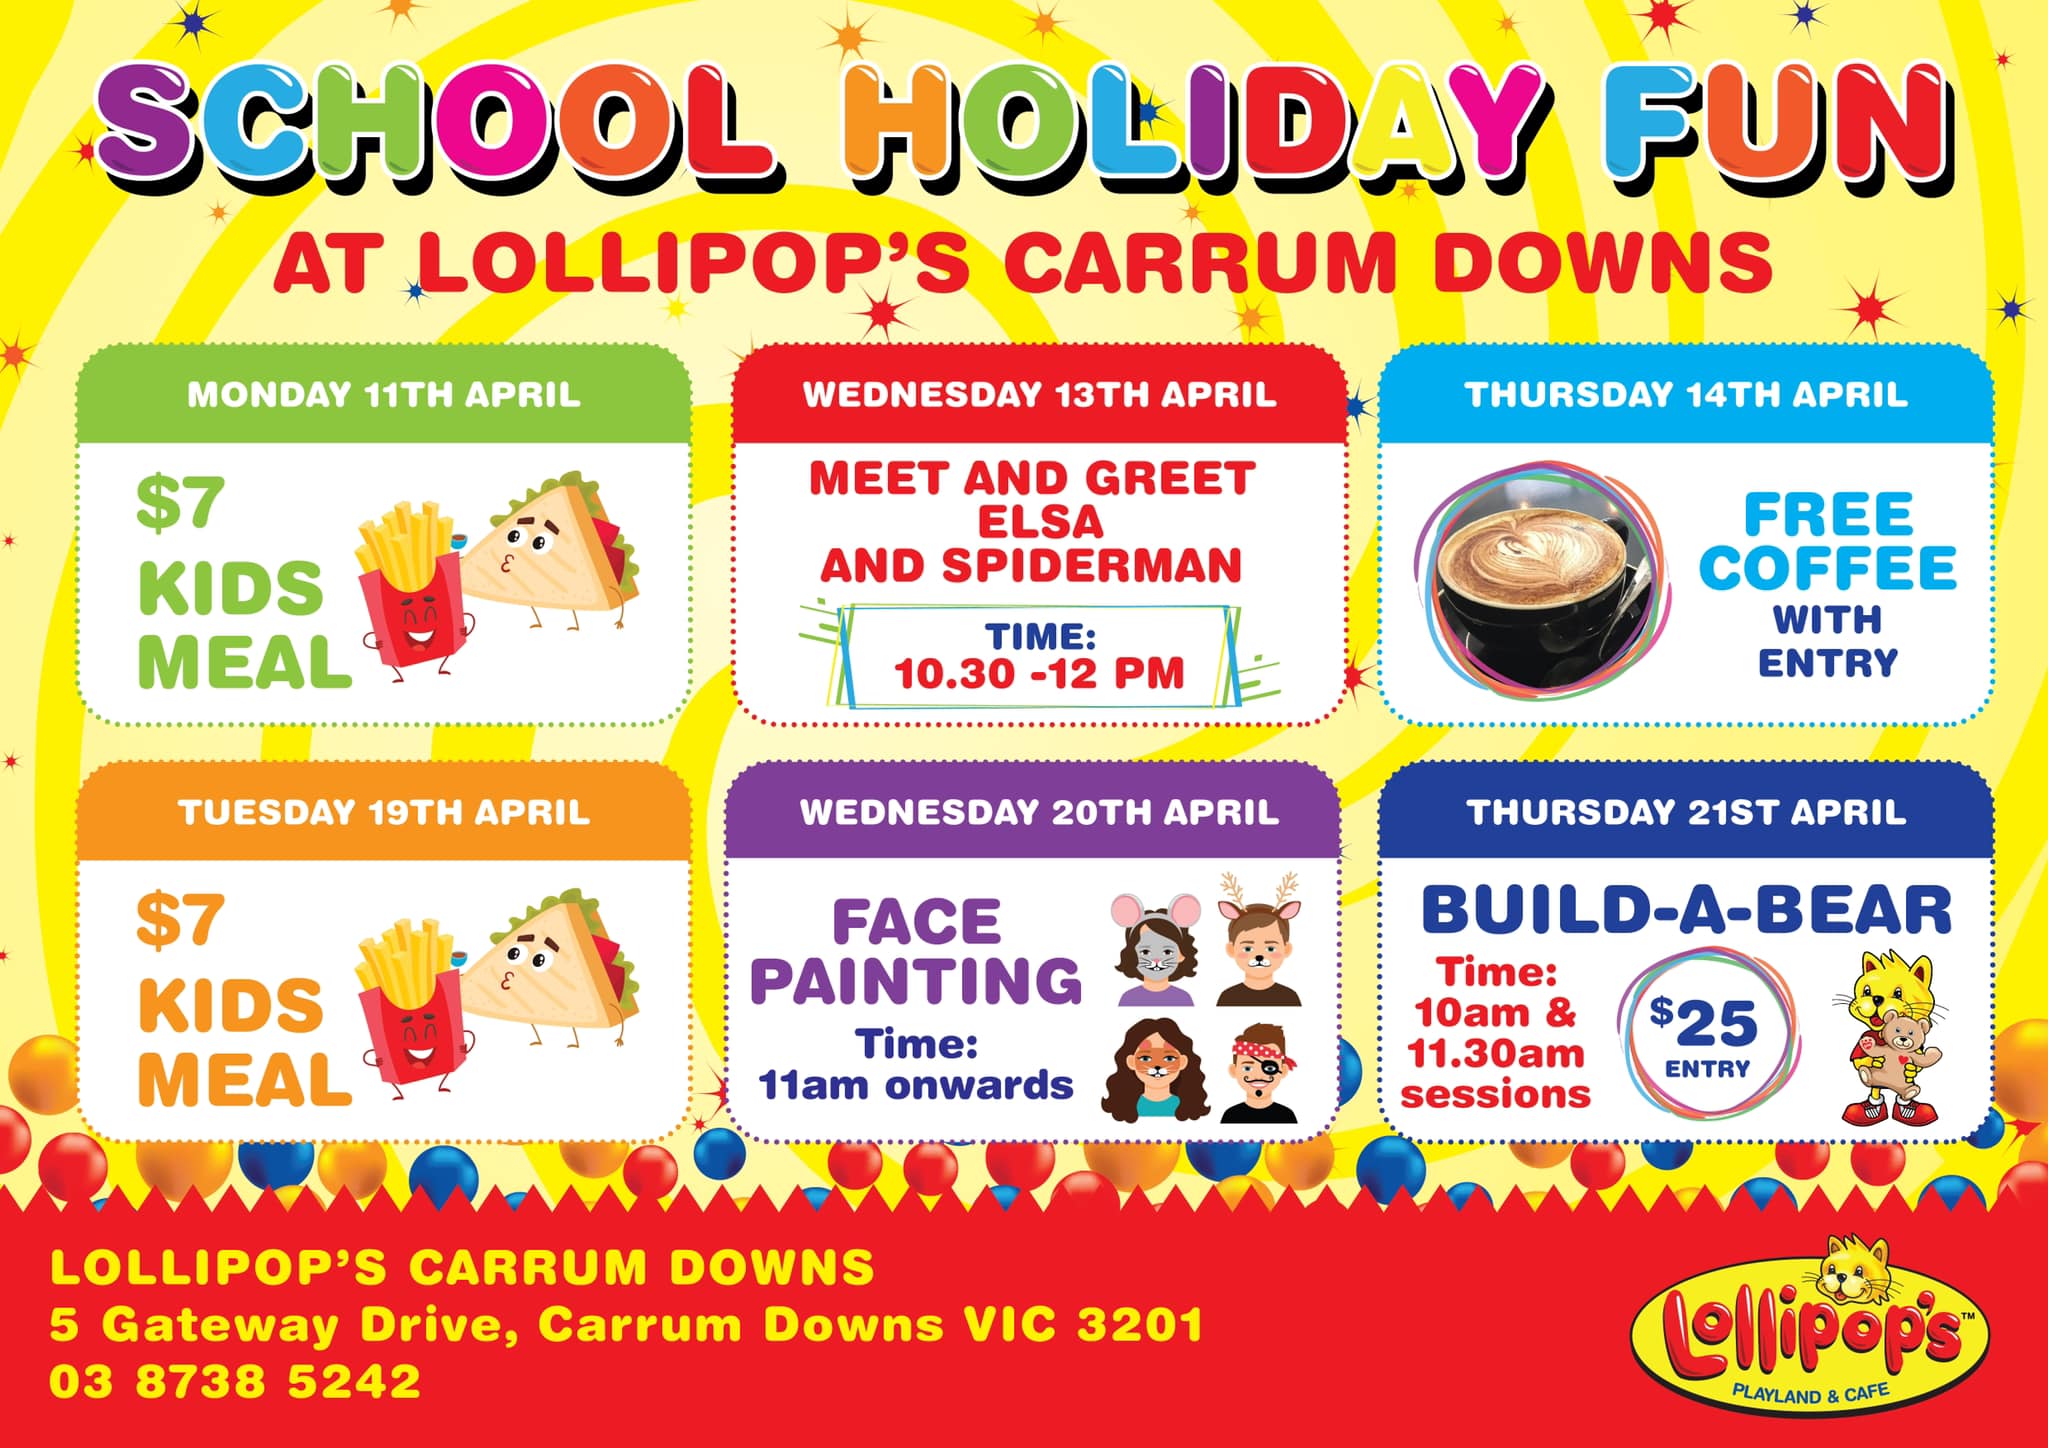 lollipops play centre carrum downs